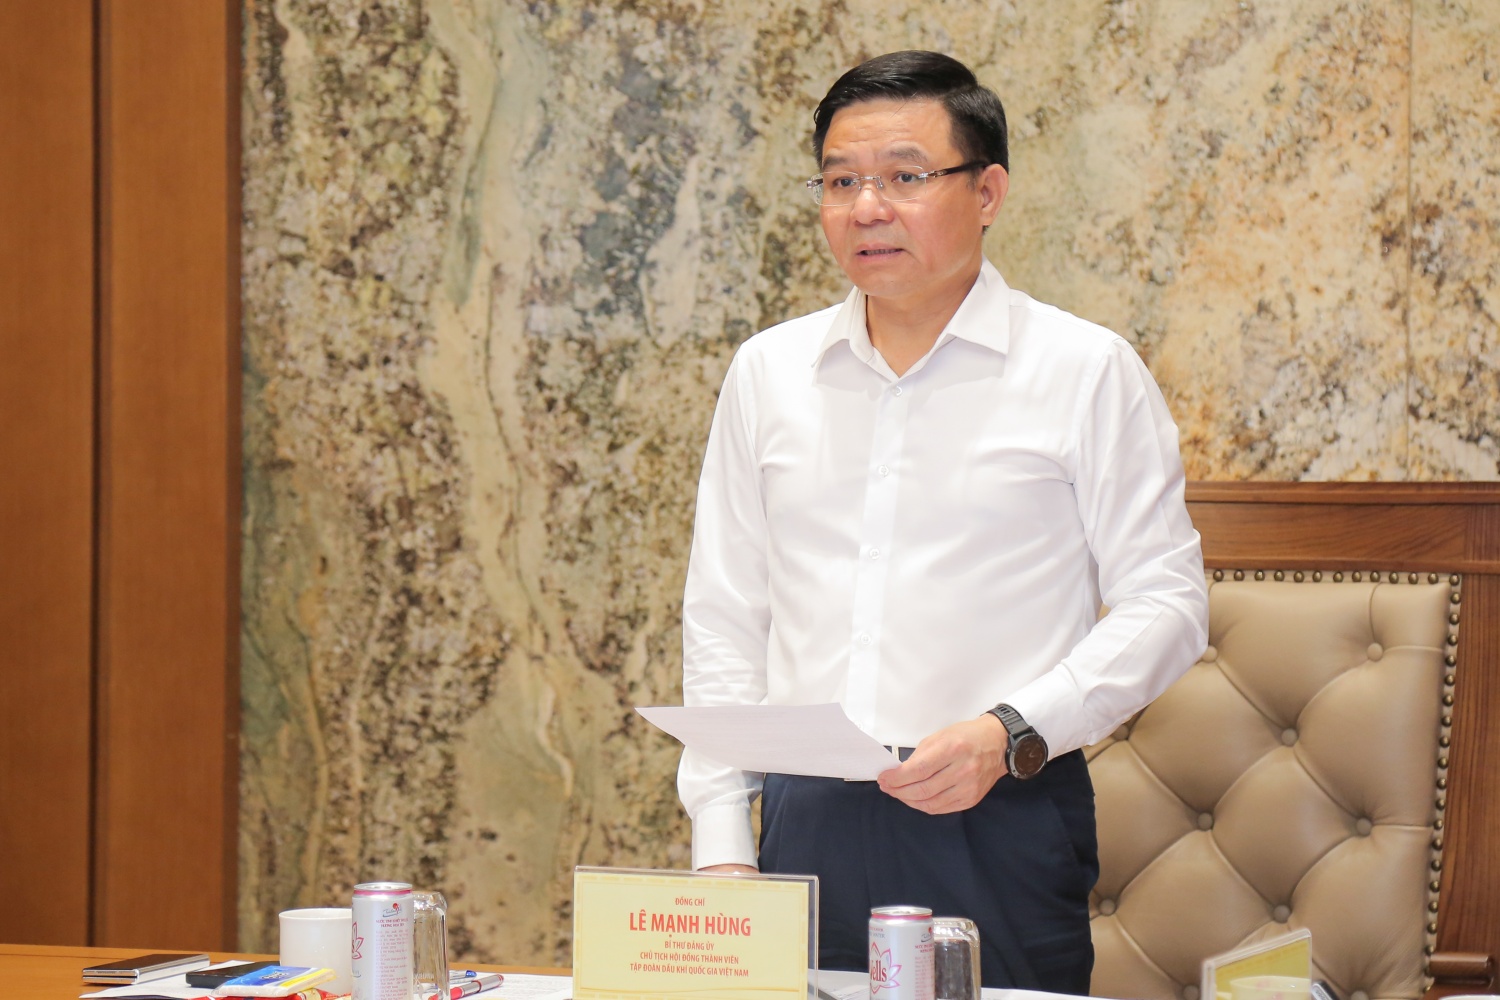 Hội nghị Ban Chấp hành Đảng bộ Tập đoàn Dầu khí Quốc gia Việt Nam lần thứ 16 nhiệm kỳ 2020 - 2025